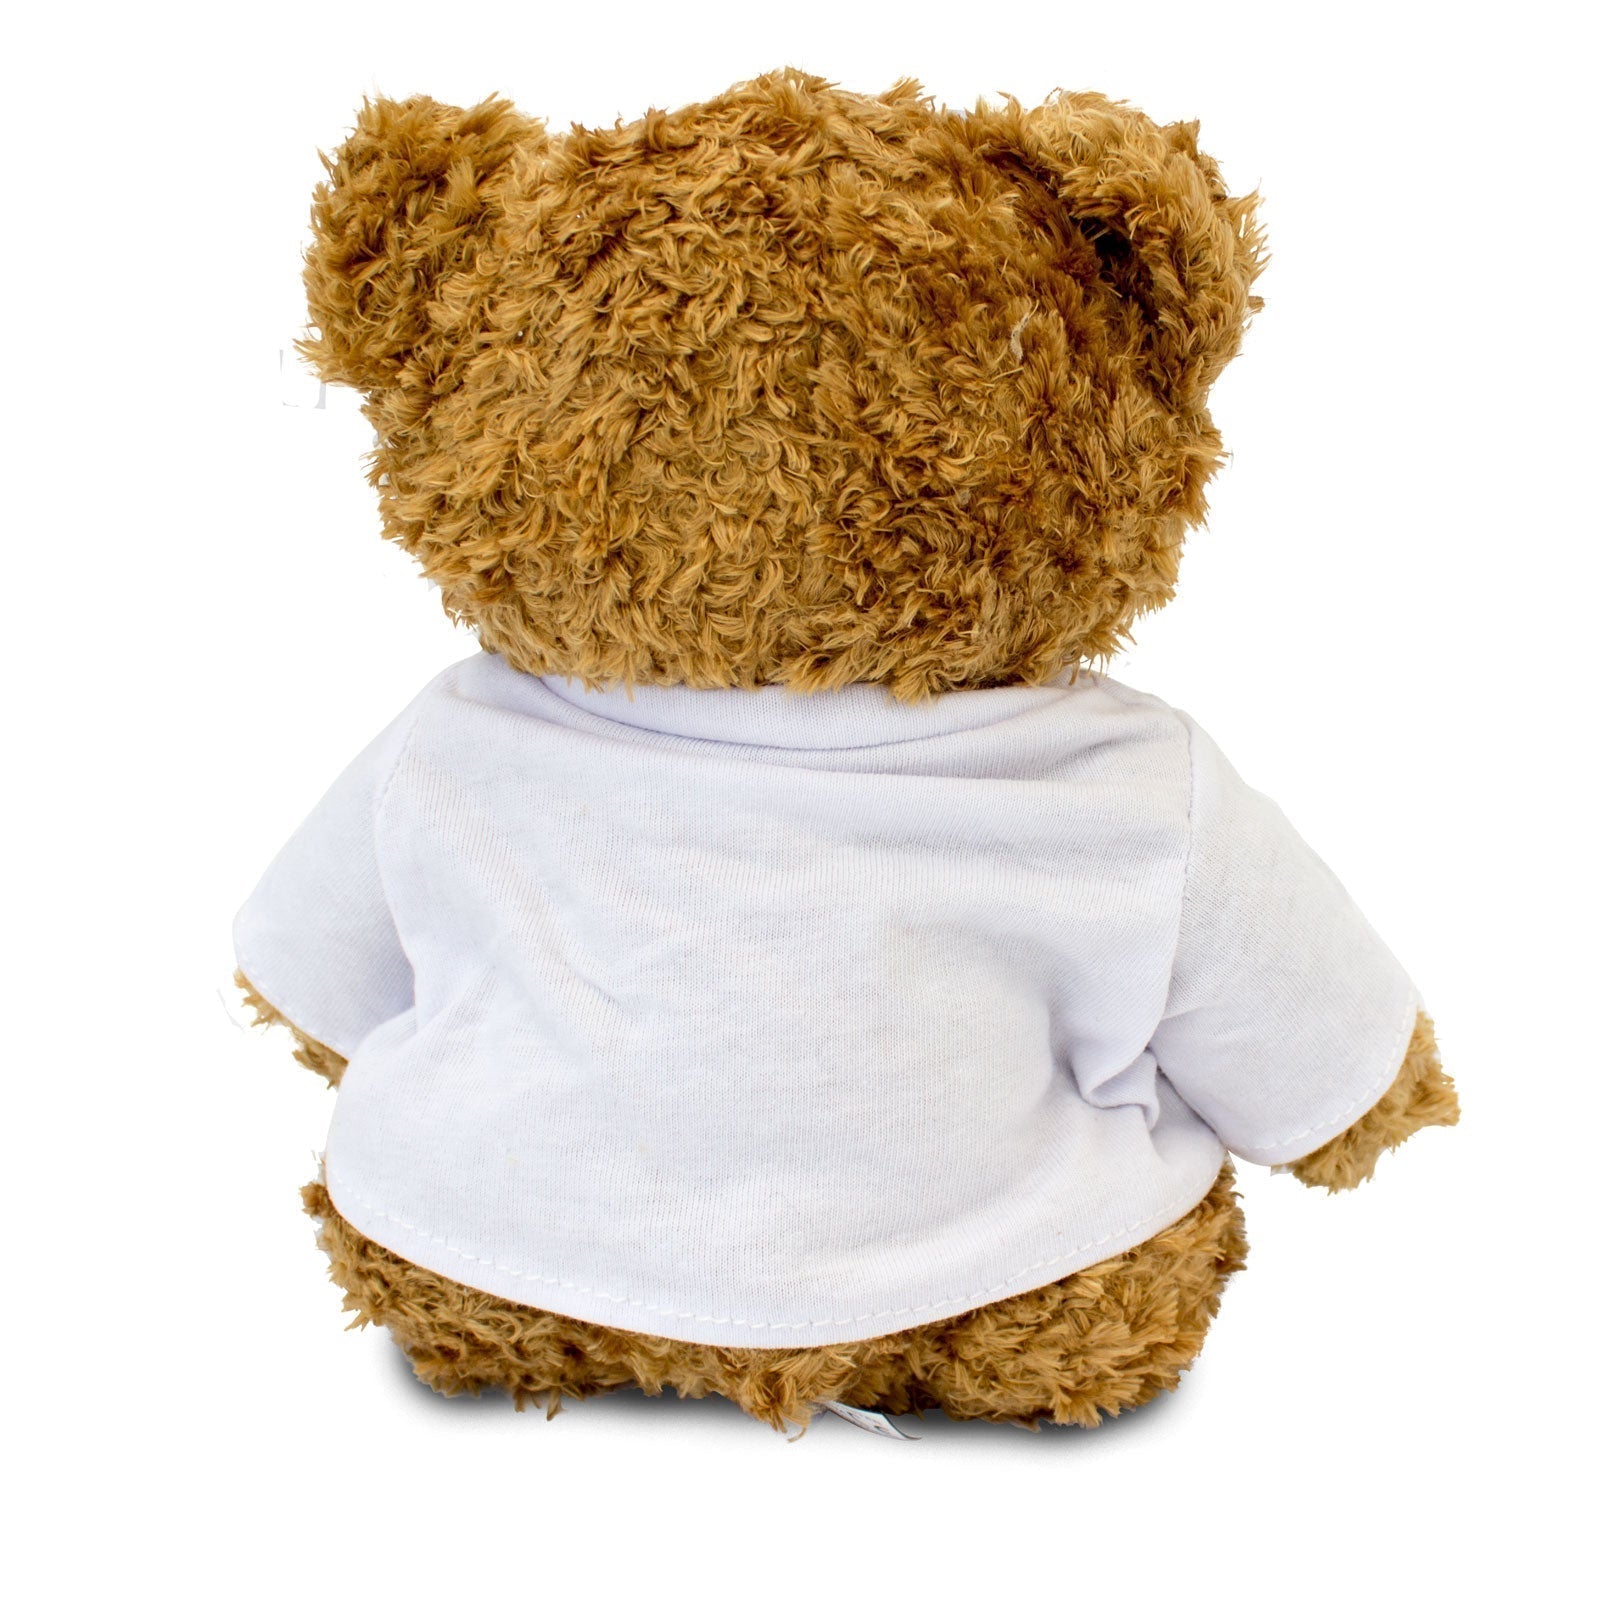 I Love Us - Teddy Bear